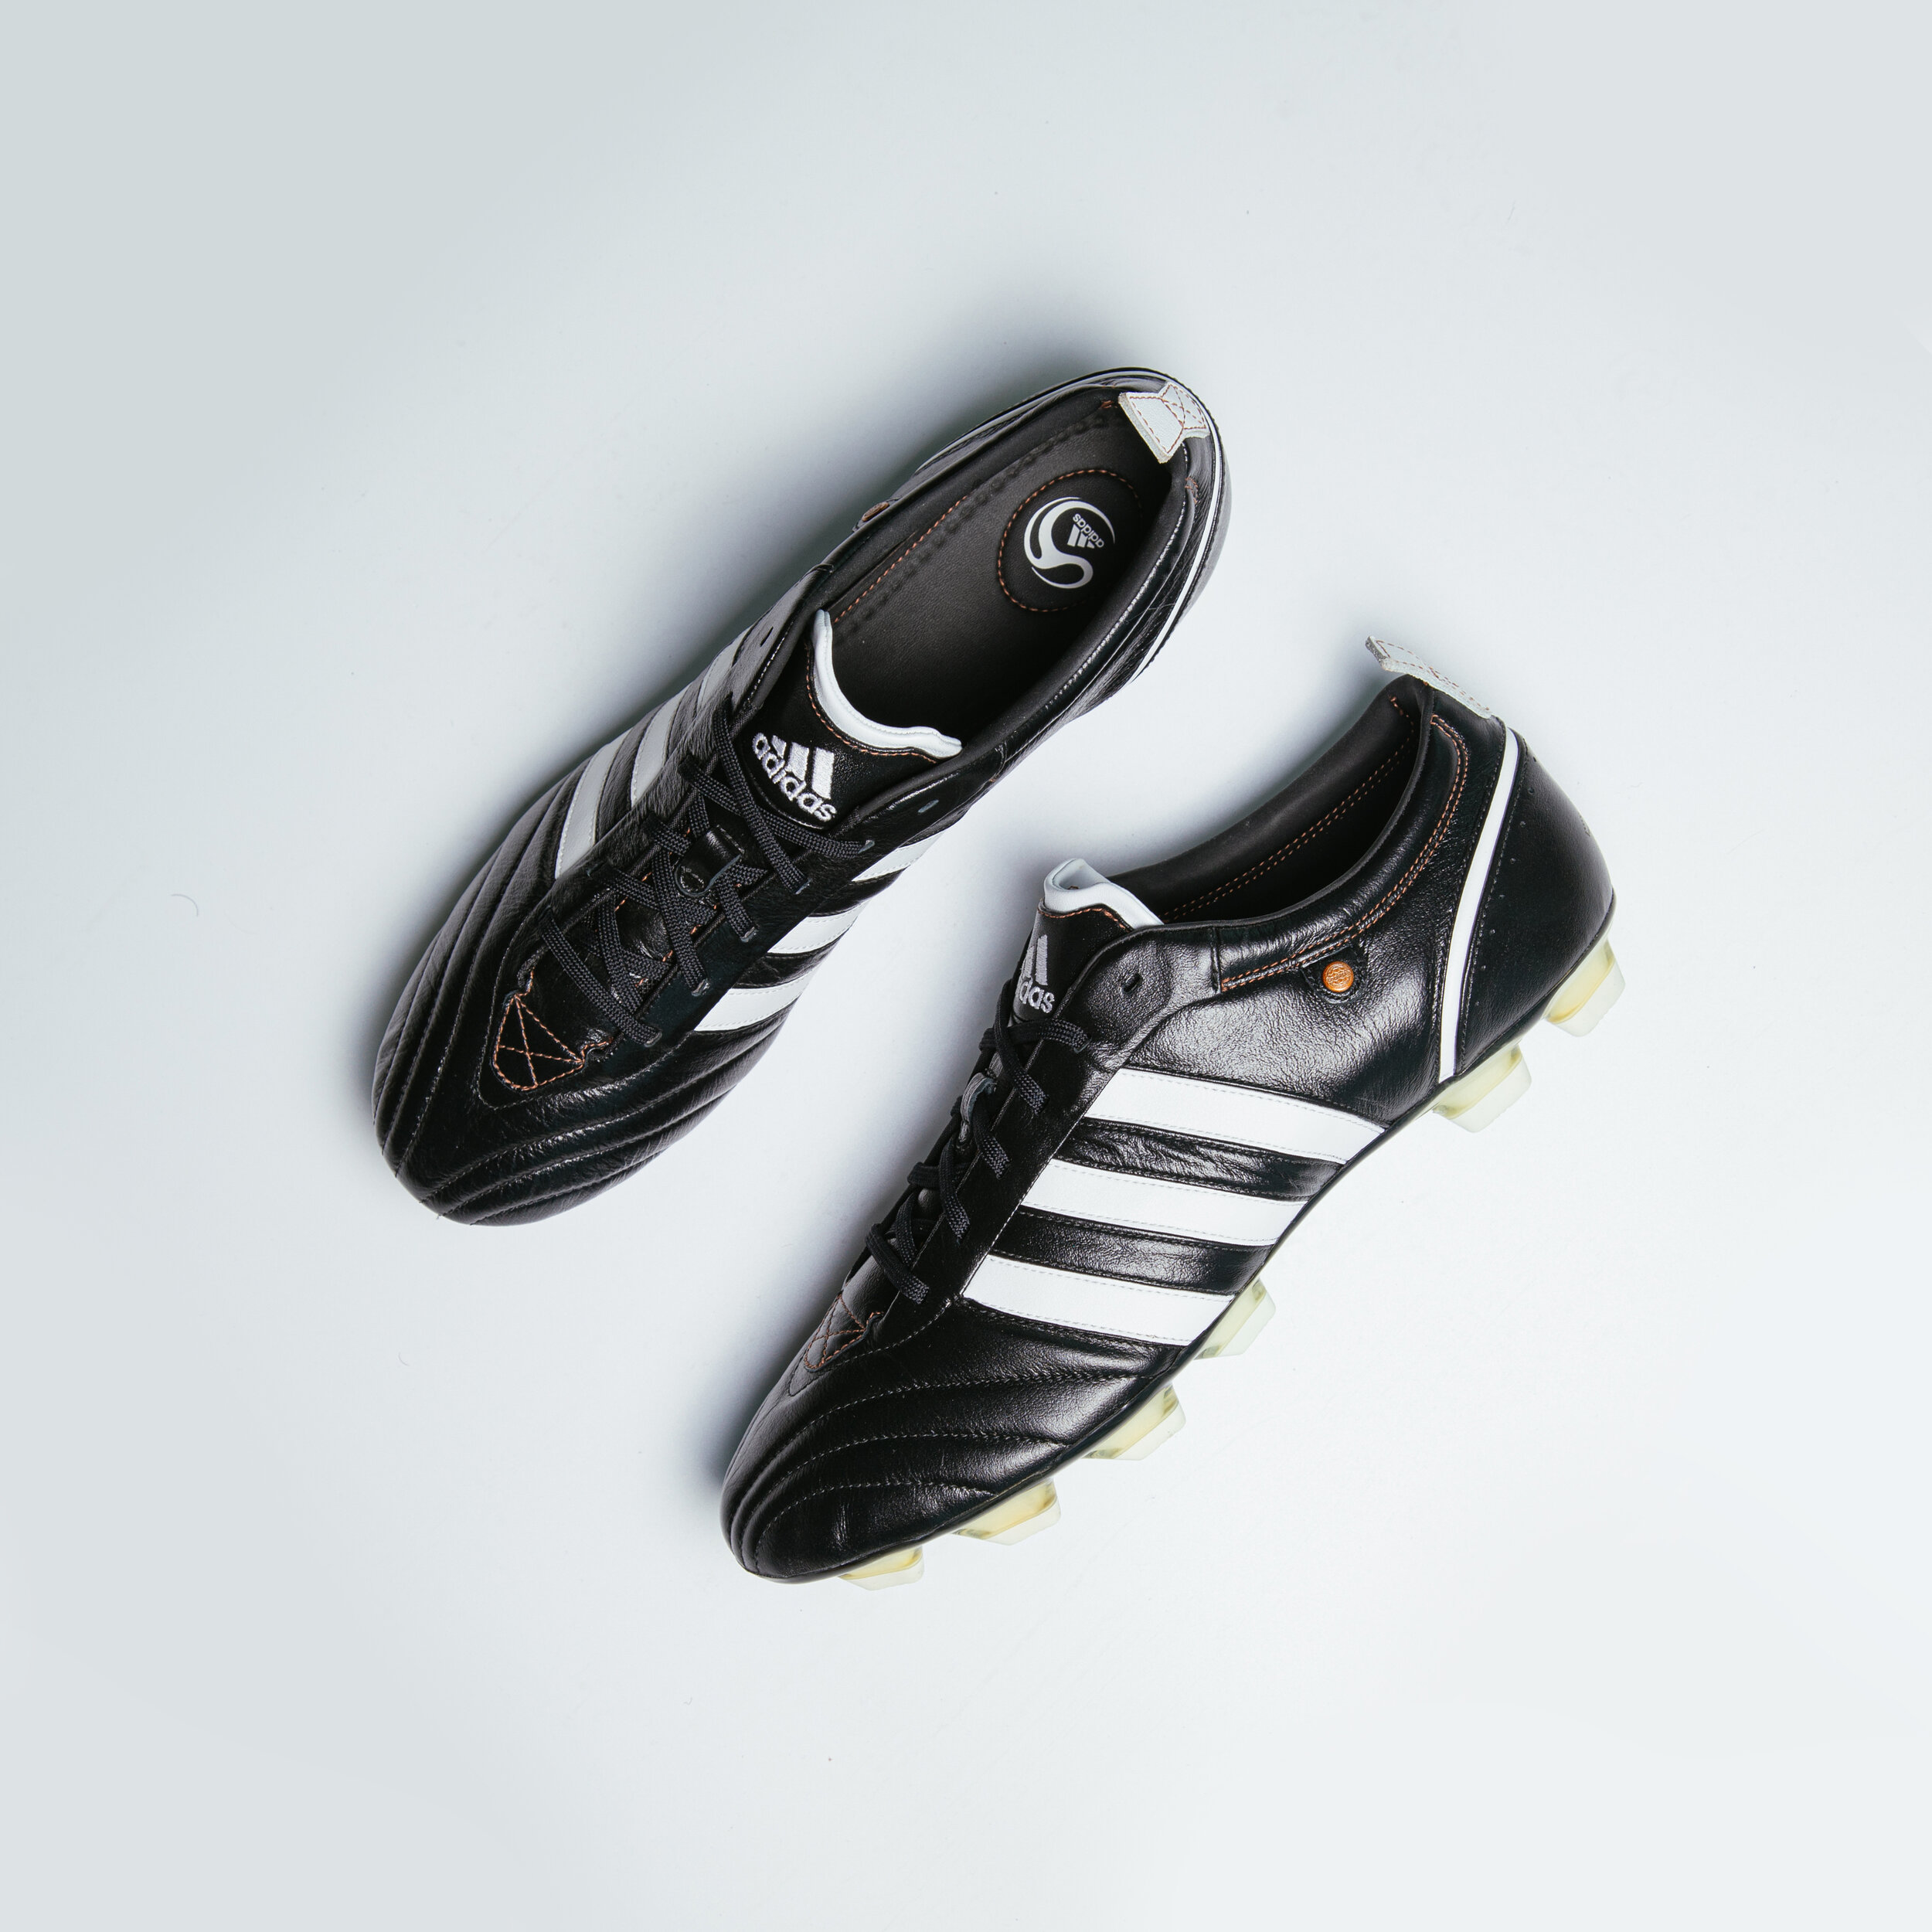 Adidas Adipure I — BW Boots UK